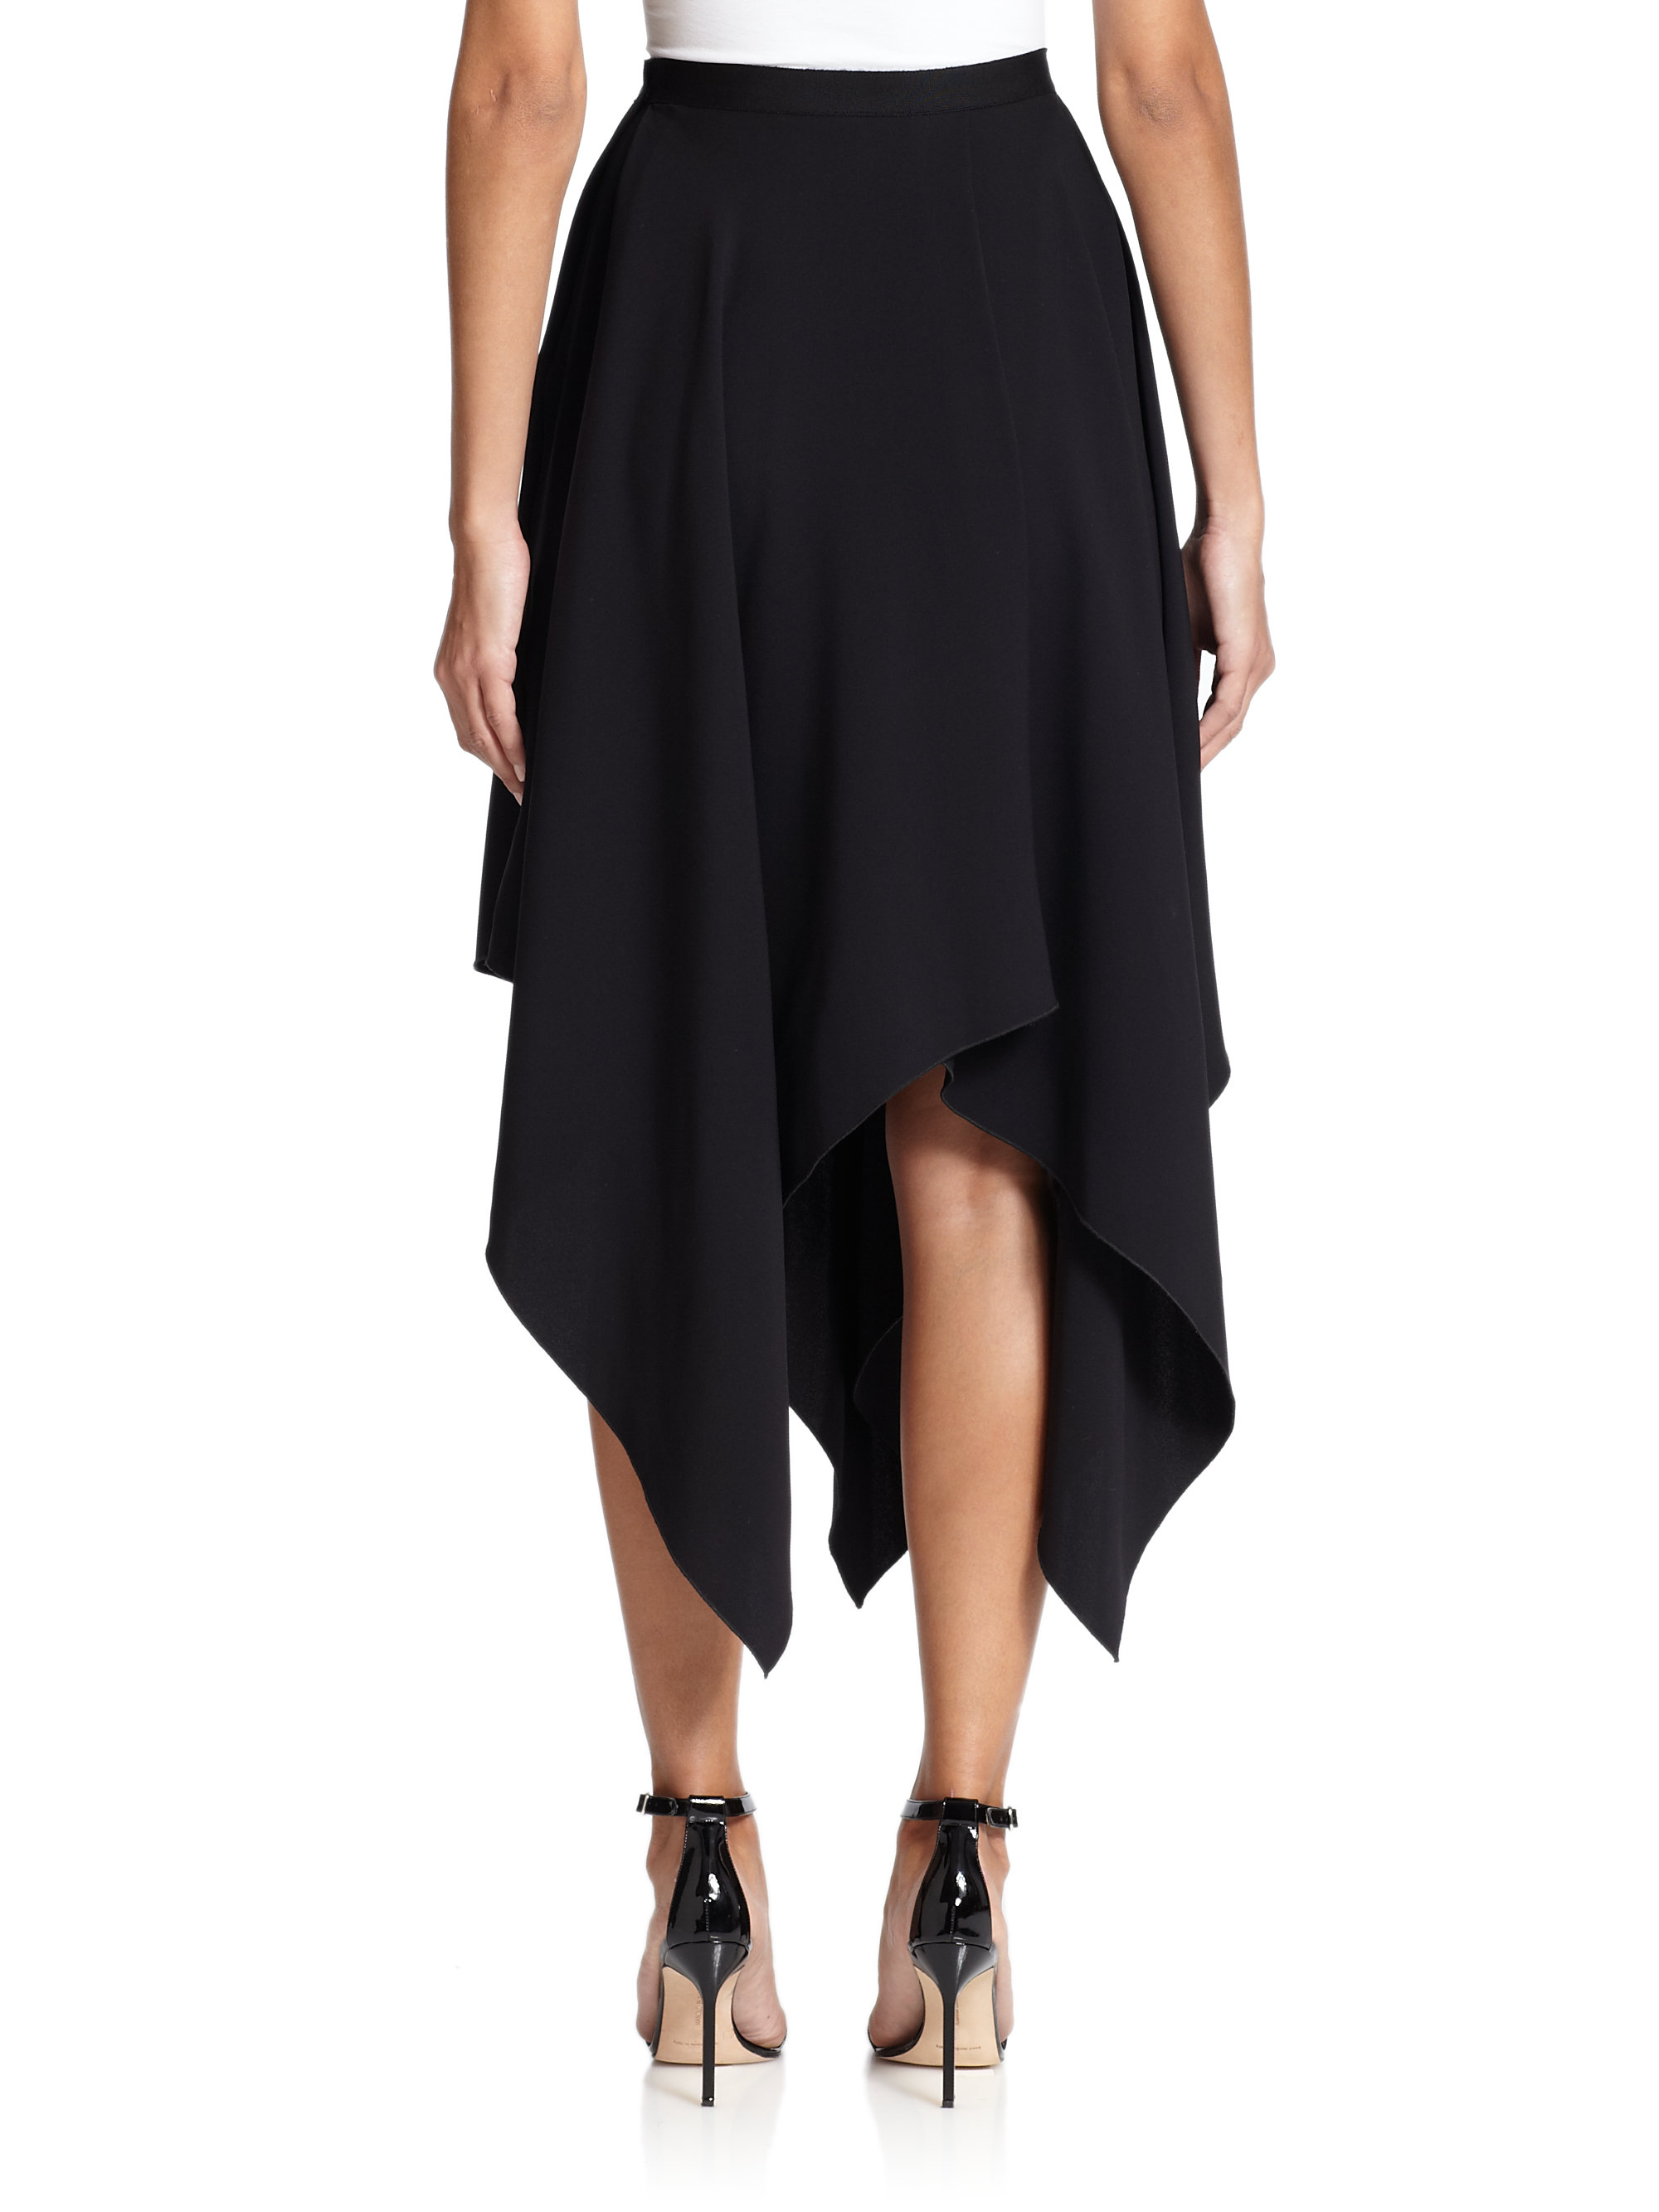 black handkerchief skirt - Cheap Online Shopping